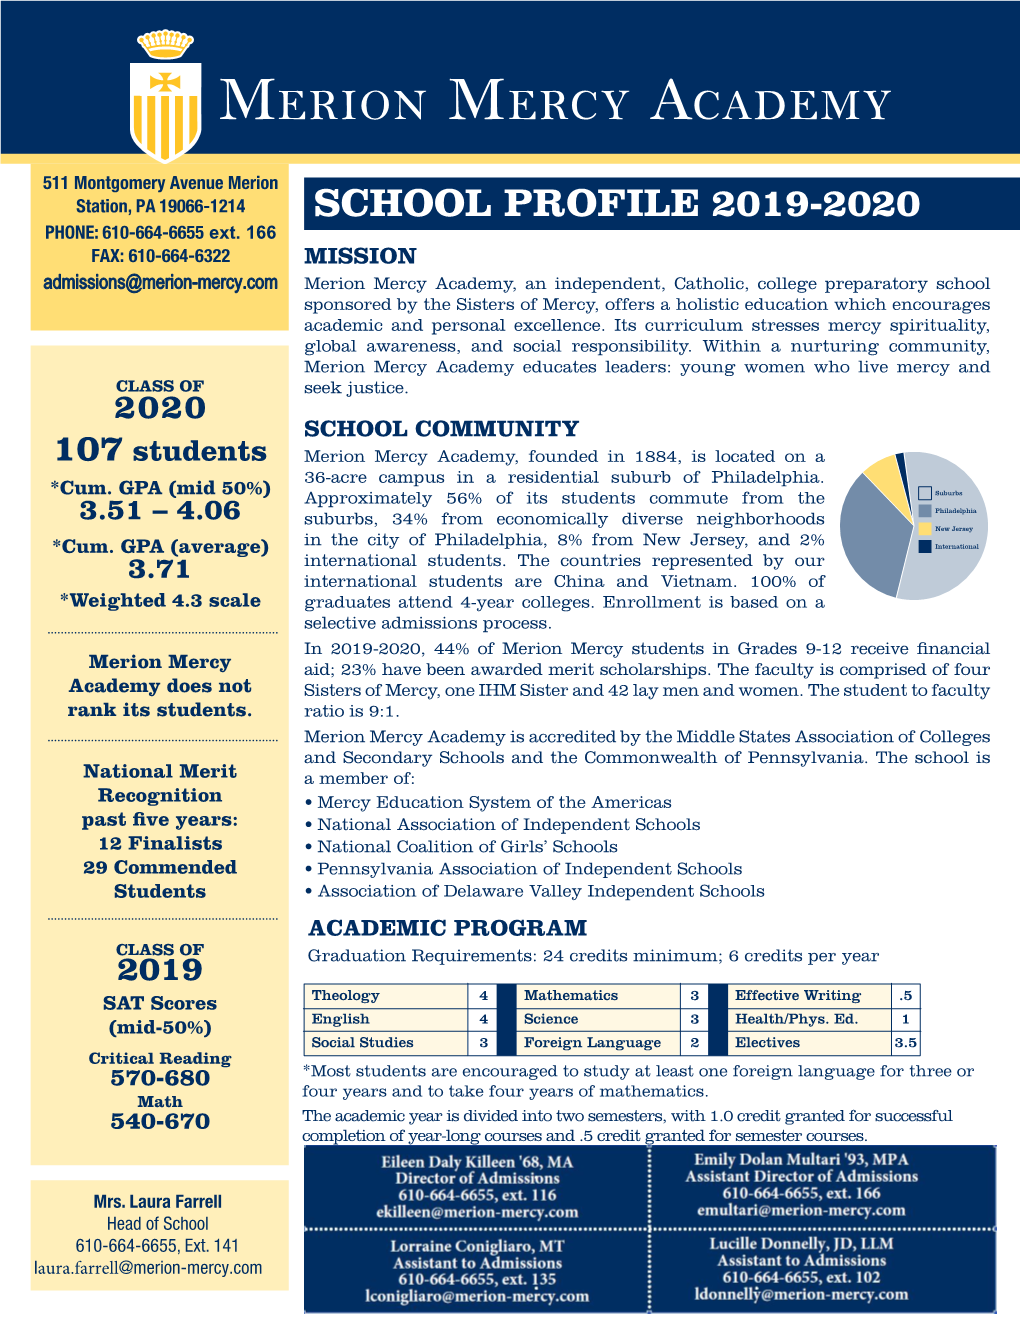 School Profile 2019-2020 PHONE: 610-664-6655 Ext